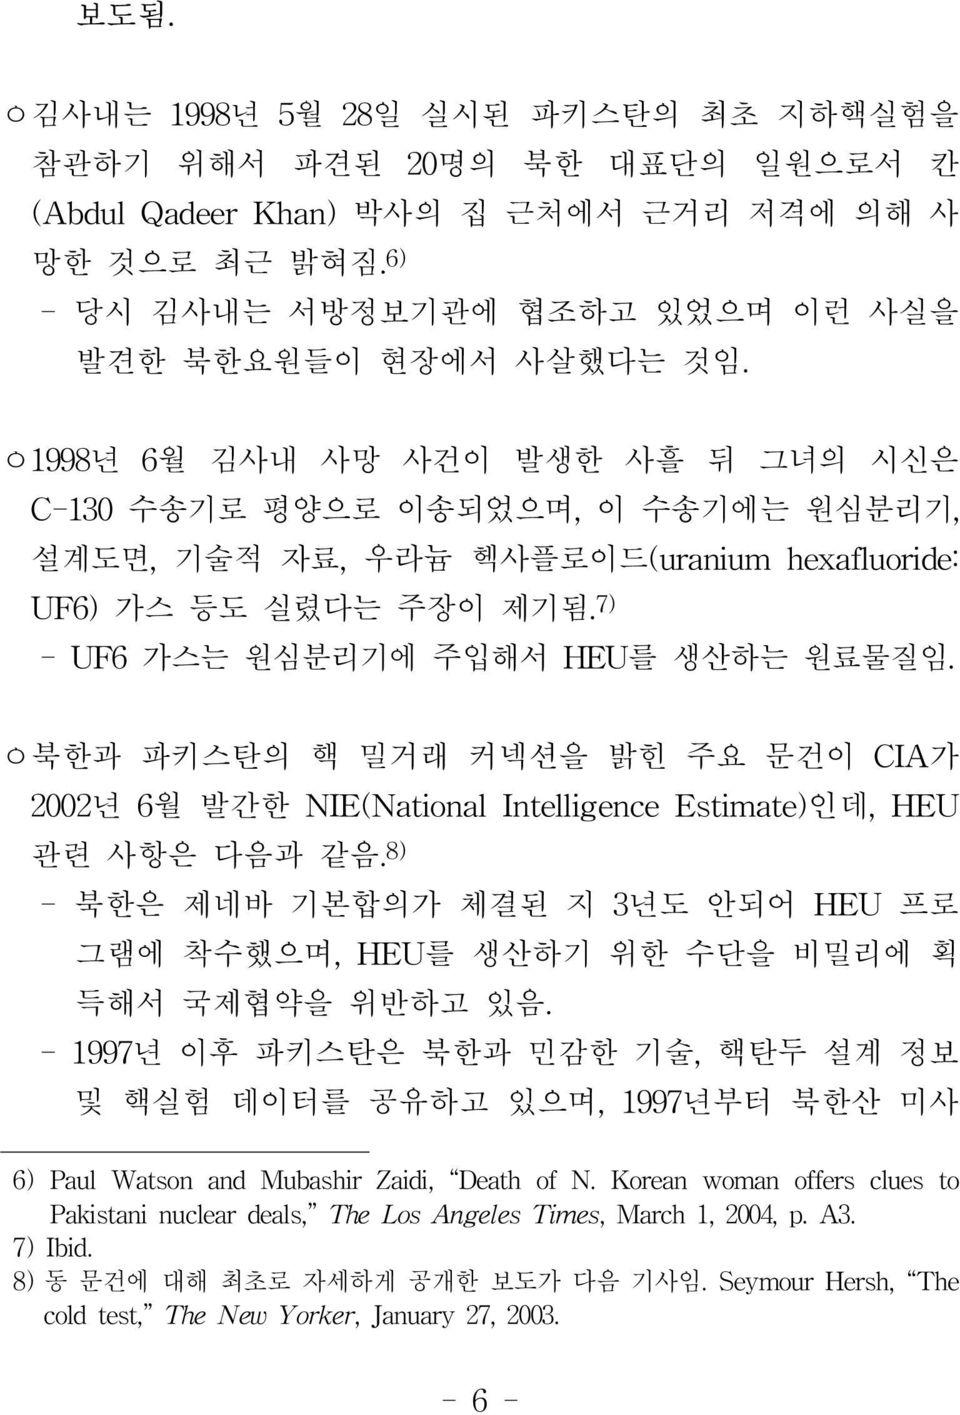 ㅇ북한과 파키스탄의 핵 밀거래 커넥션을 밝힌 주요 문건이 CIA가 2002년 6월 발간한 NIE(National Intelligence Estimate)인데, HEU 관련 사항은 다음과 같음.